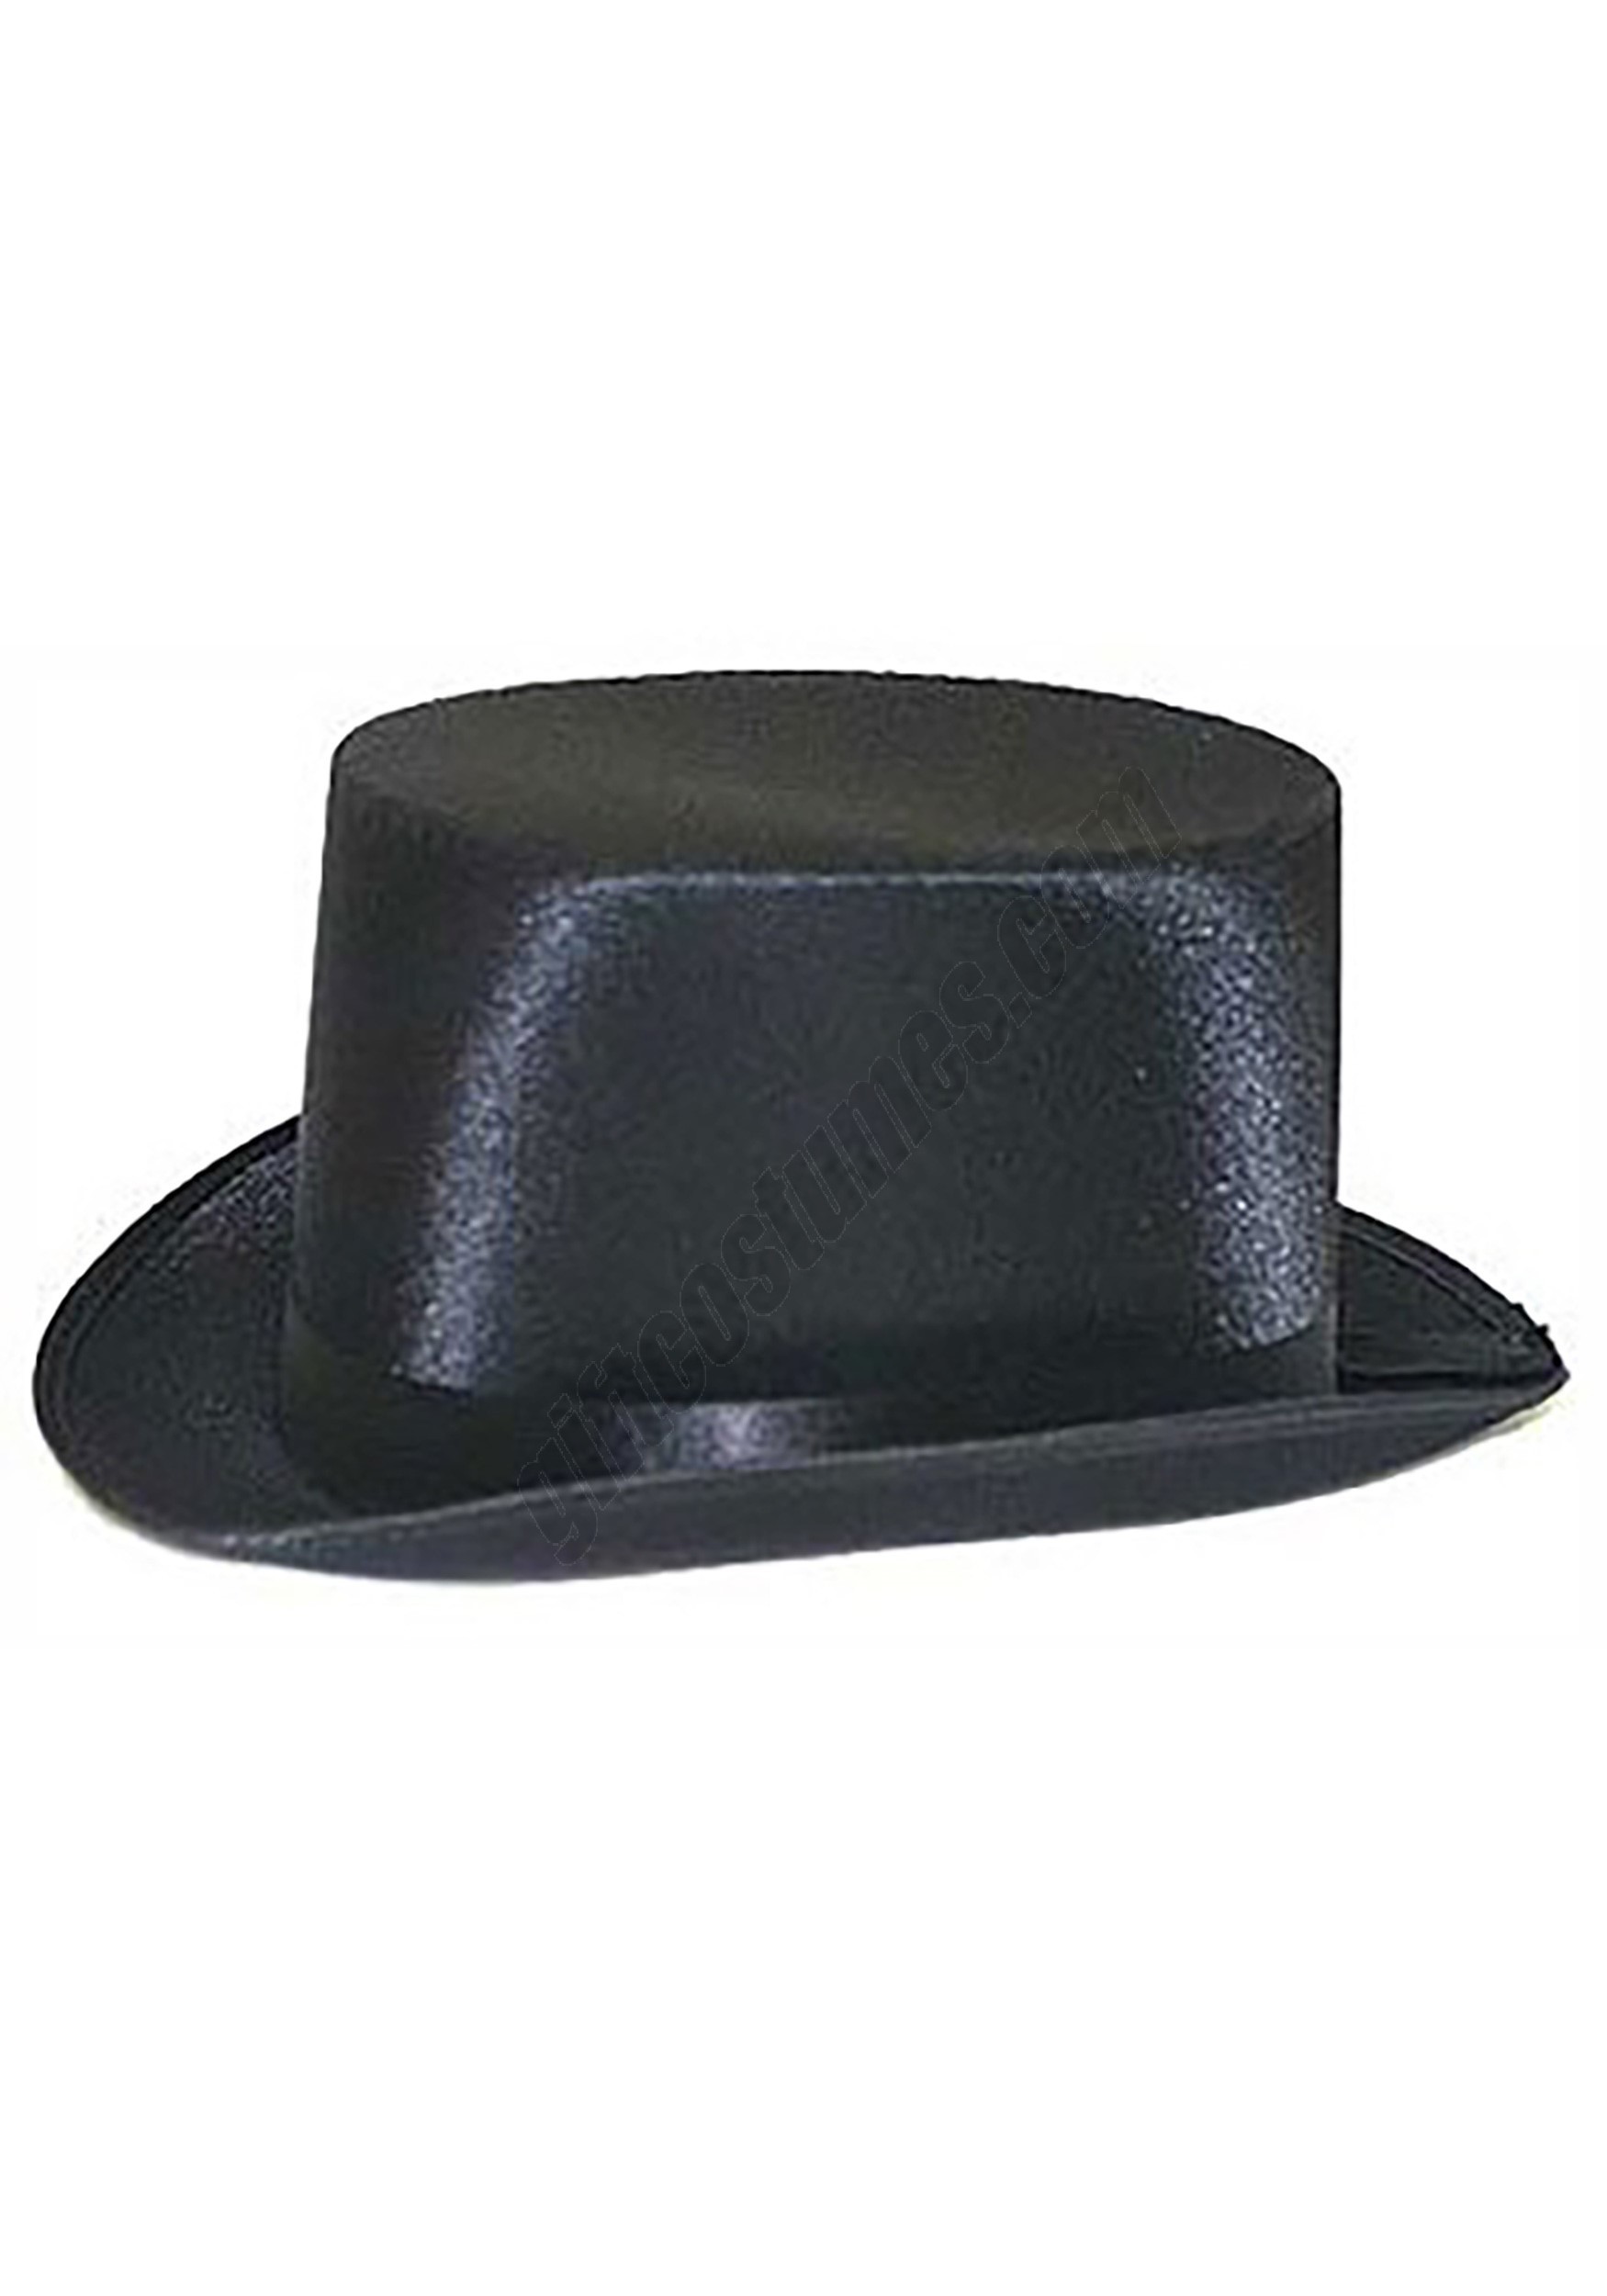 Black Top Hat Promotions - Black Top Hat Promotions